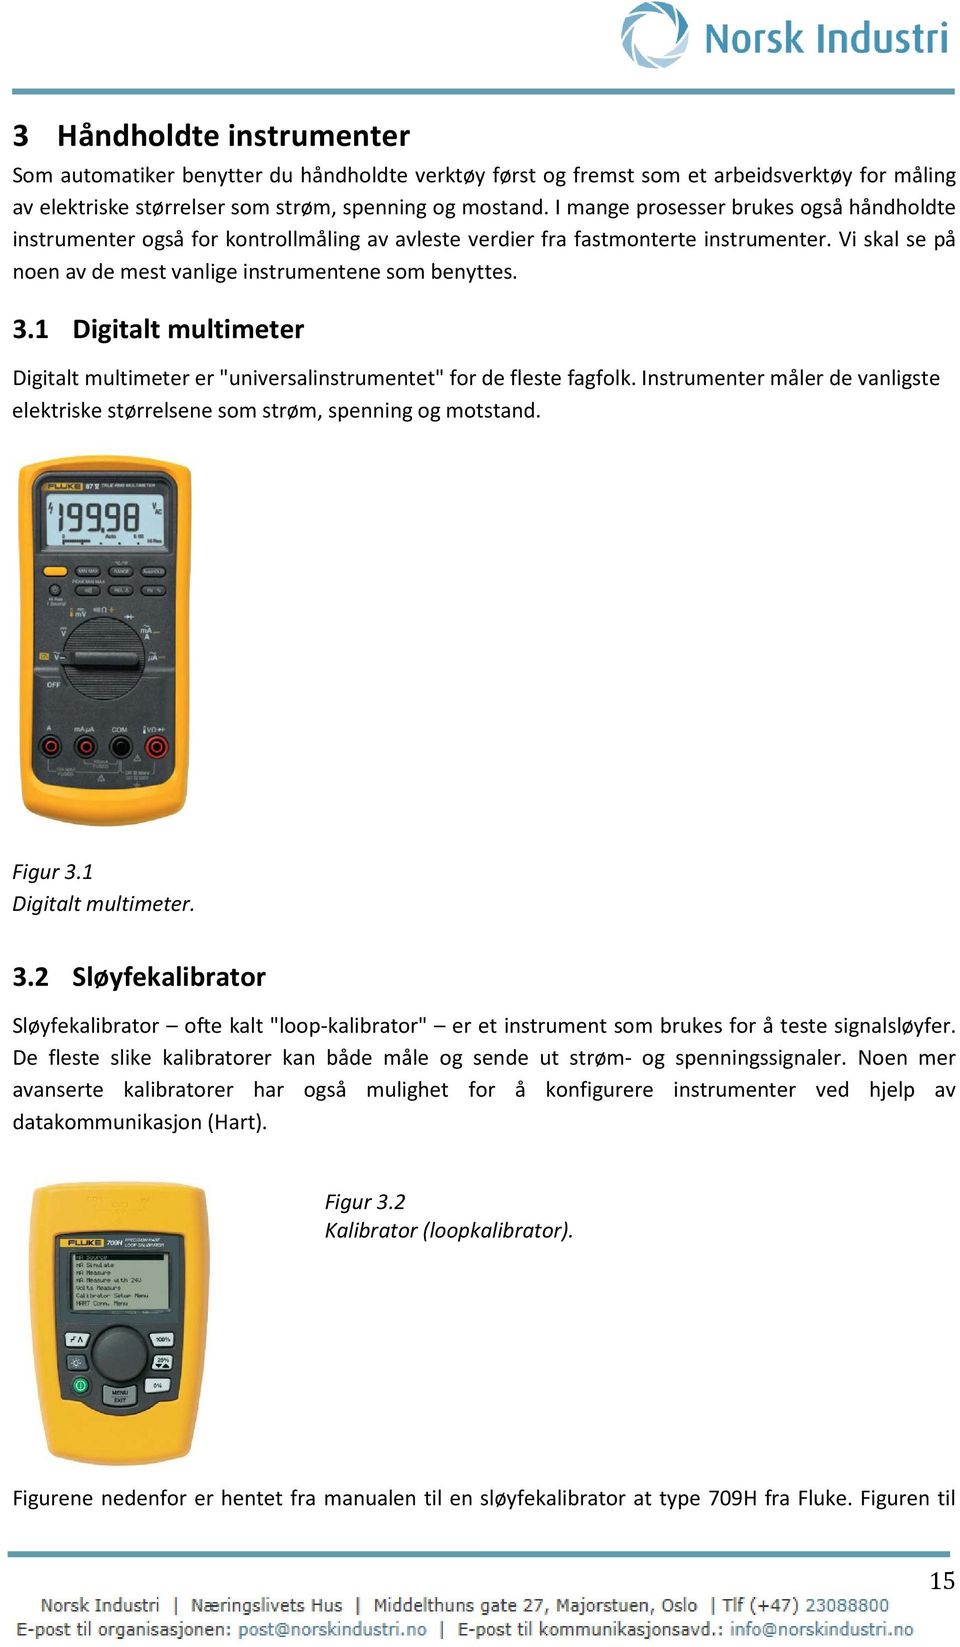 1 Digitalt multimeter Digitalt multimeter er "universalinstrumentet" for de fleste fagfolk. Instrumenter måler de vanligste elektriske størrelsene som strøm, spenning og motstand. Figur 3.